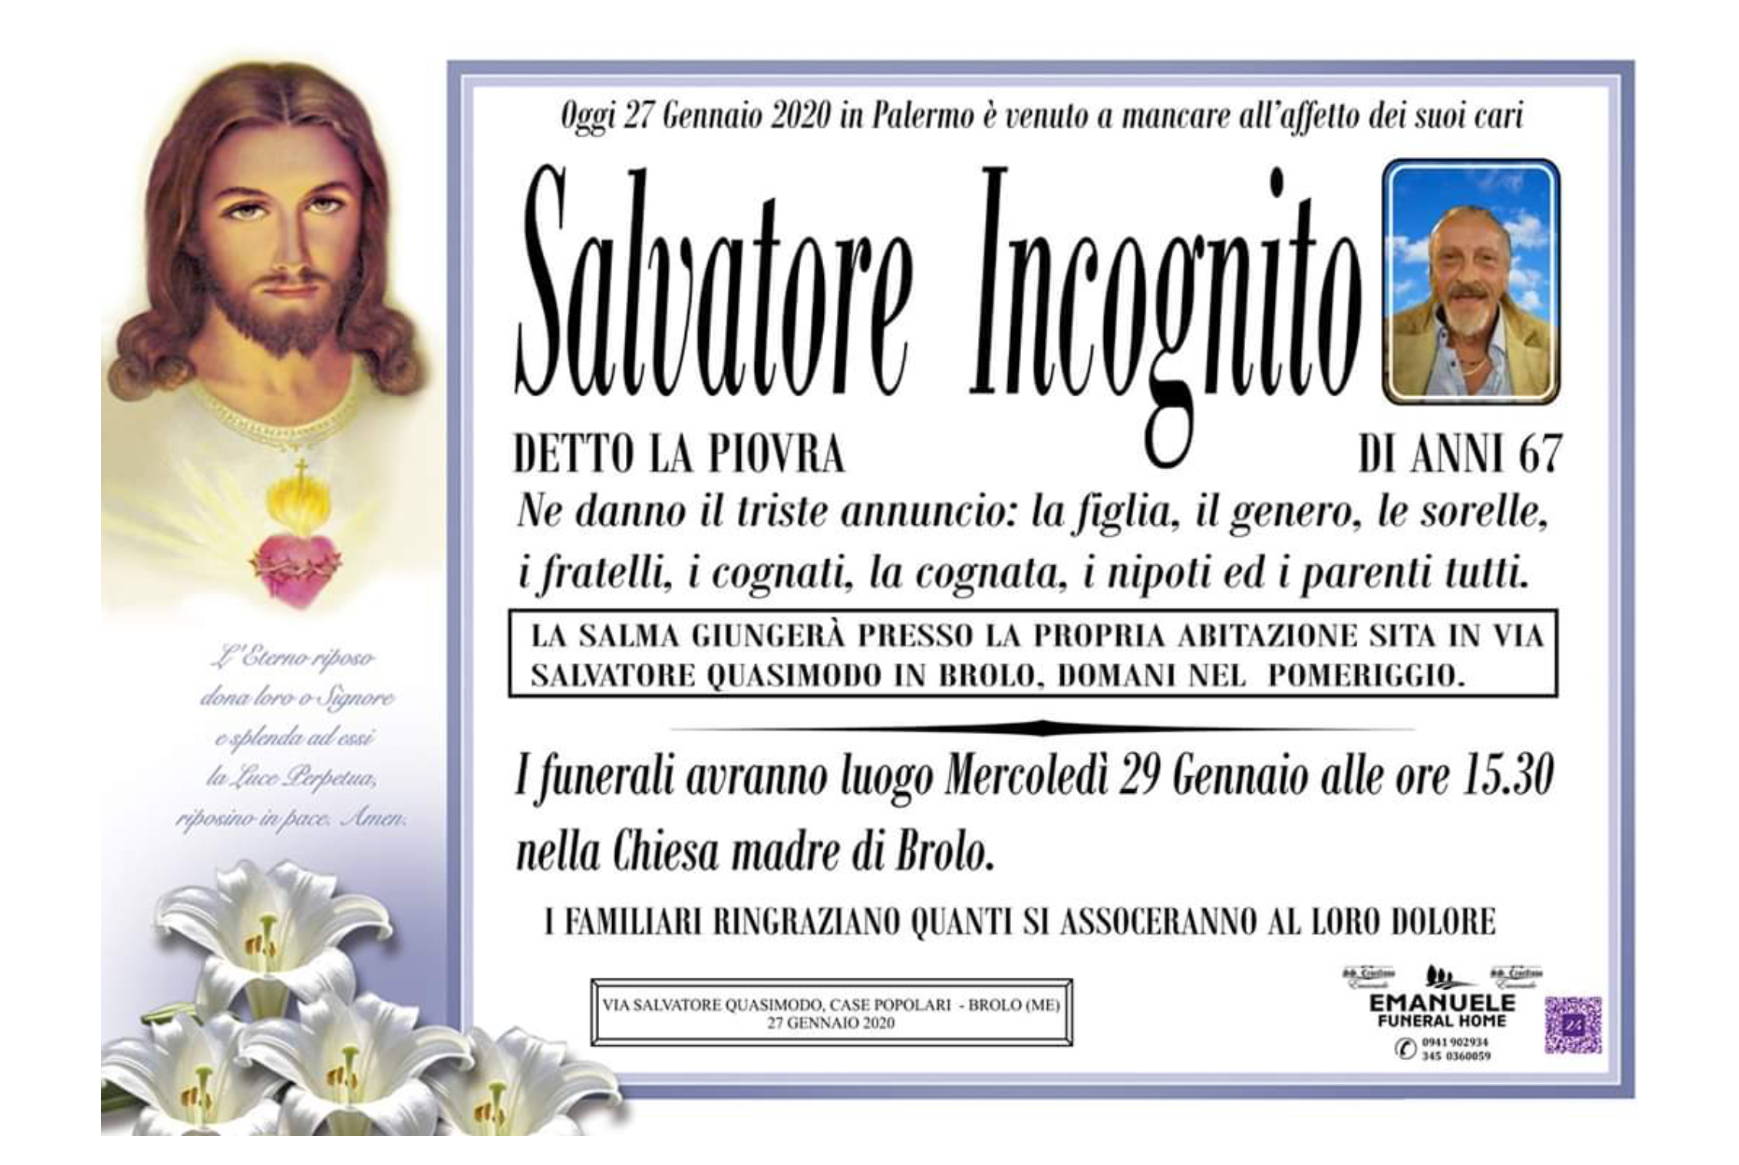 Salvatore Incognito